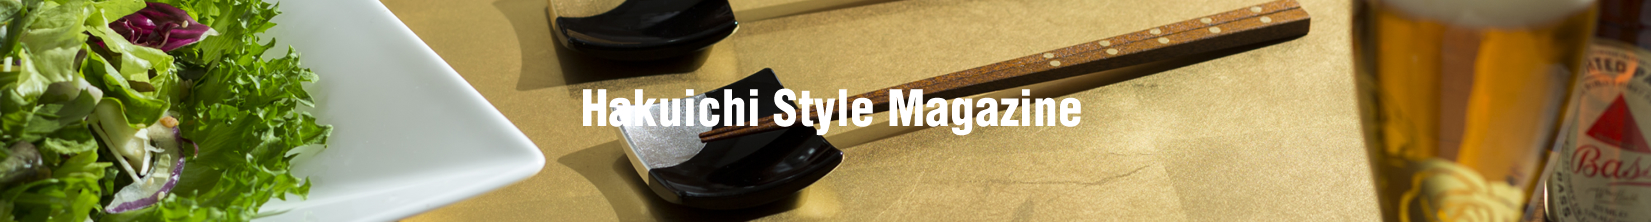 Hakuichi Style Magazine